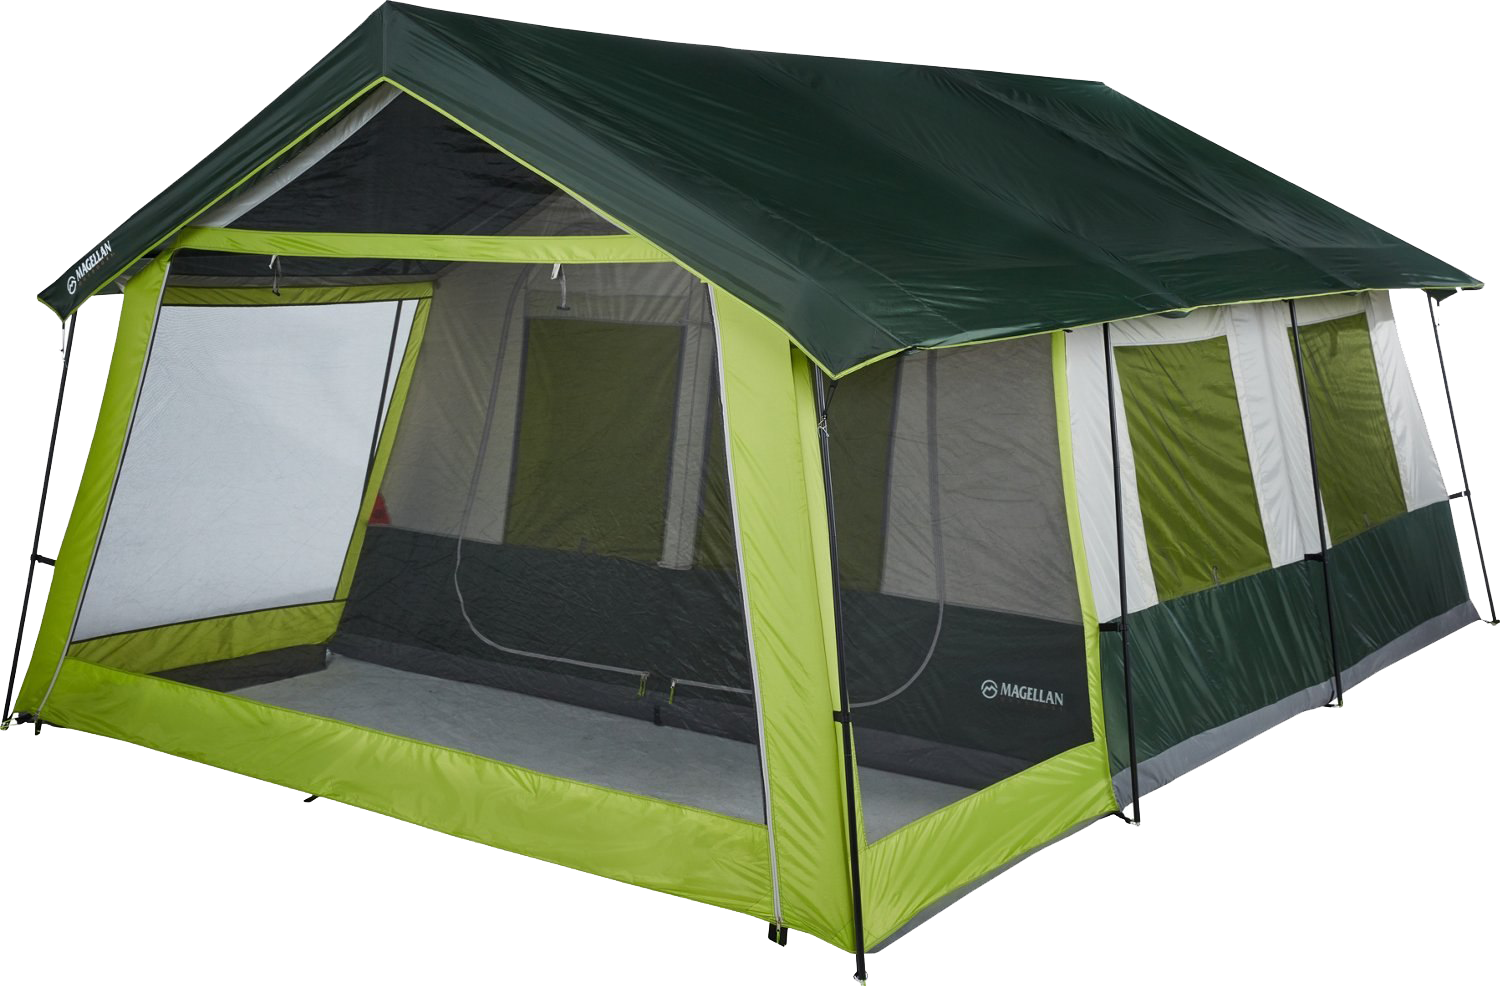 Магазин туристических палаток. Лагерь модульный (шатер и 2 палатки) Nash Base Camp. Quechua mh100 палатка. Палатка кемпинг домик зеленый xyp602. Палатка best Camp 165*165.